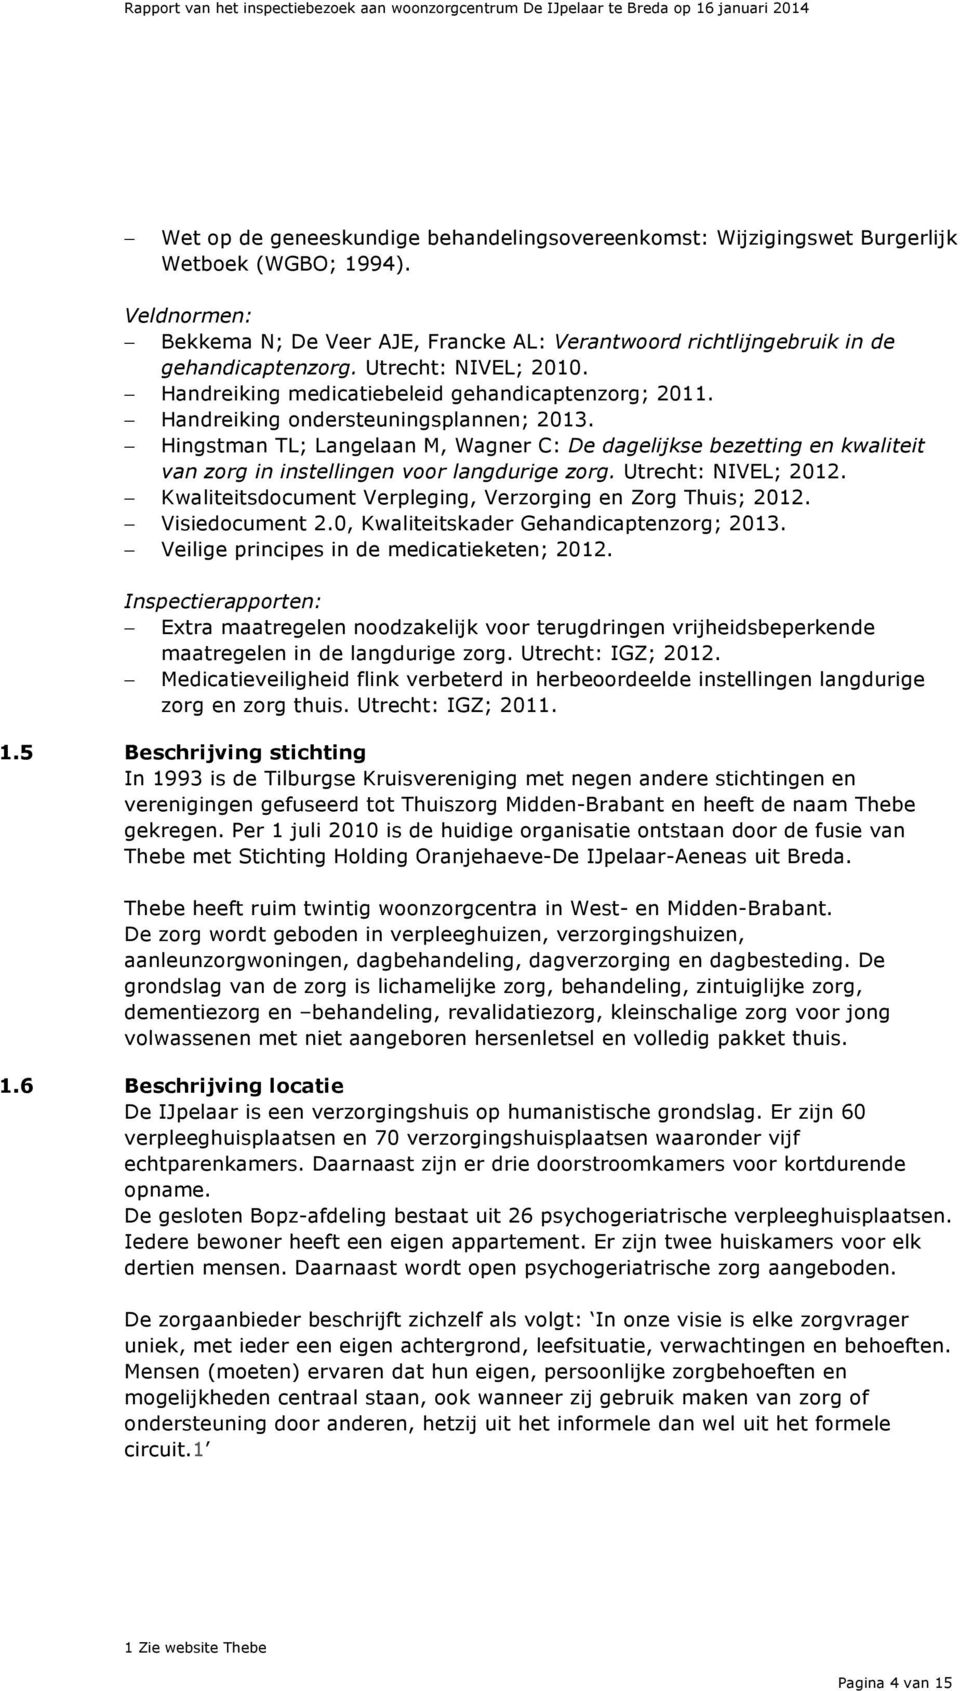 Hingstman TL; Langelaan M, Wagner C: De dagelijkse bezetting en kwaliteit van zorg in instellingen voor langdurige zorg. Utrecht: NIVEL; 2012.